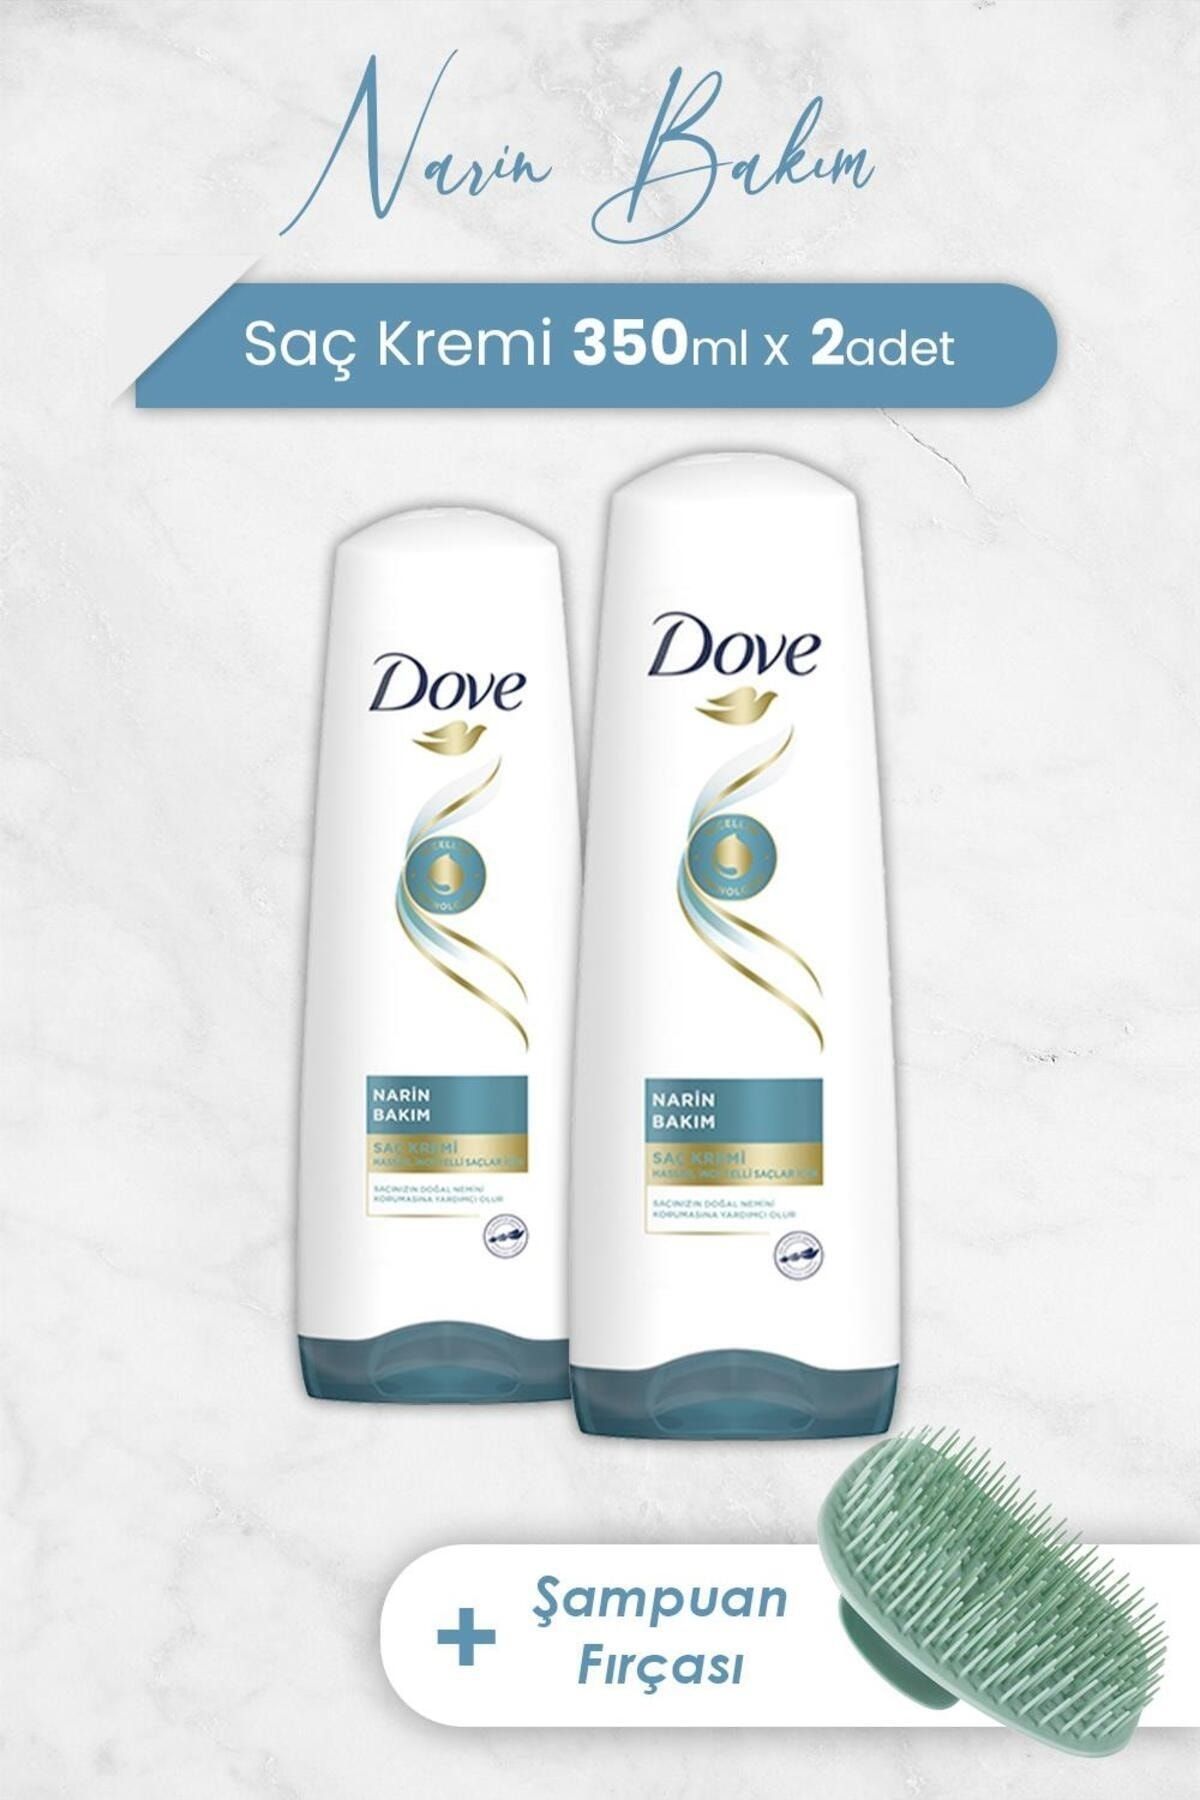 Dove Micellar Narin Bakım Saç Kremi 350 ml x 2 Adet ve Şampuan Fırçası